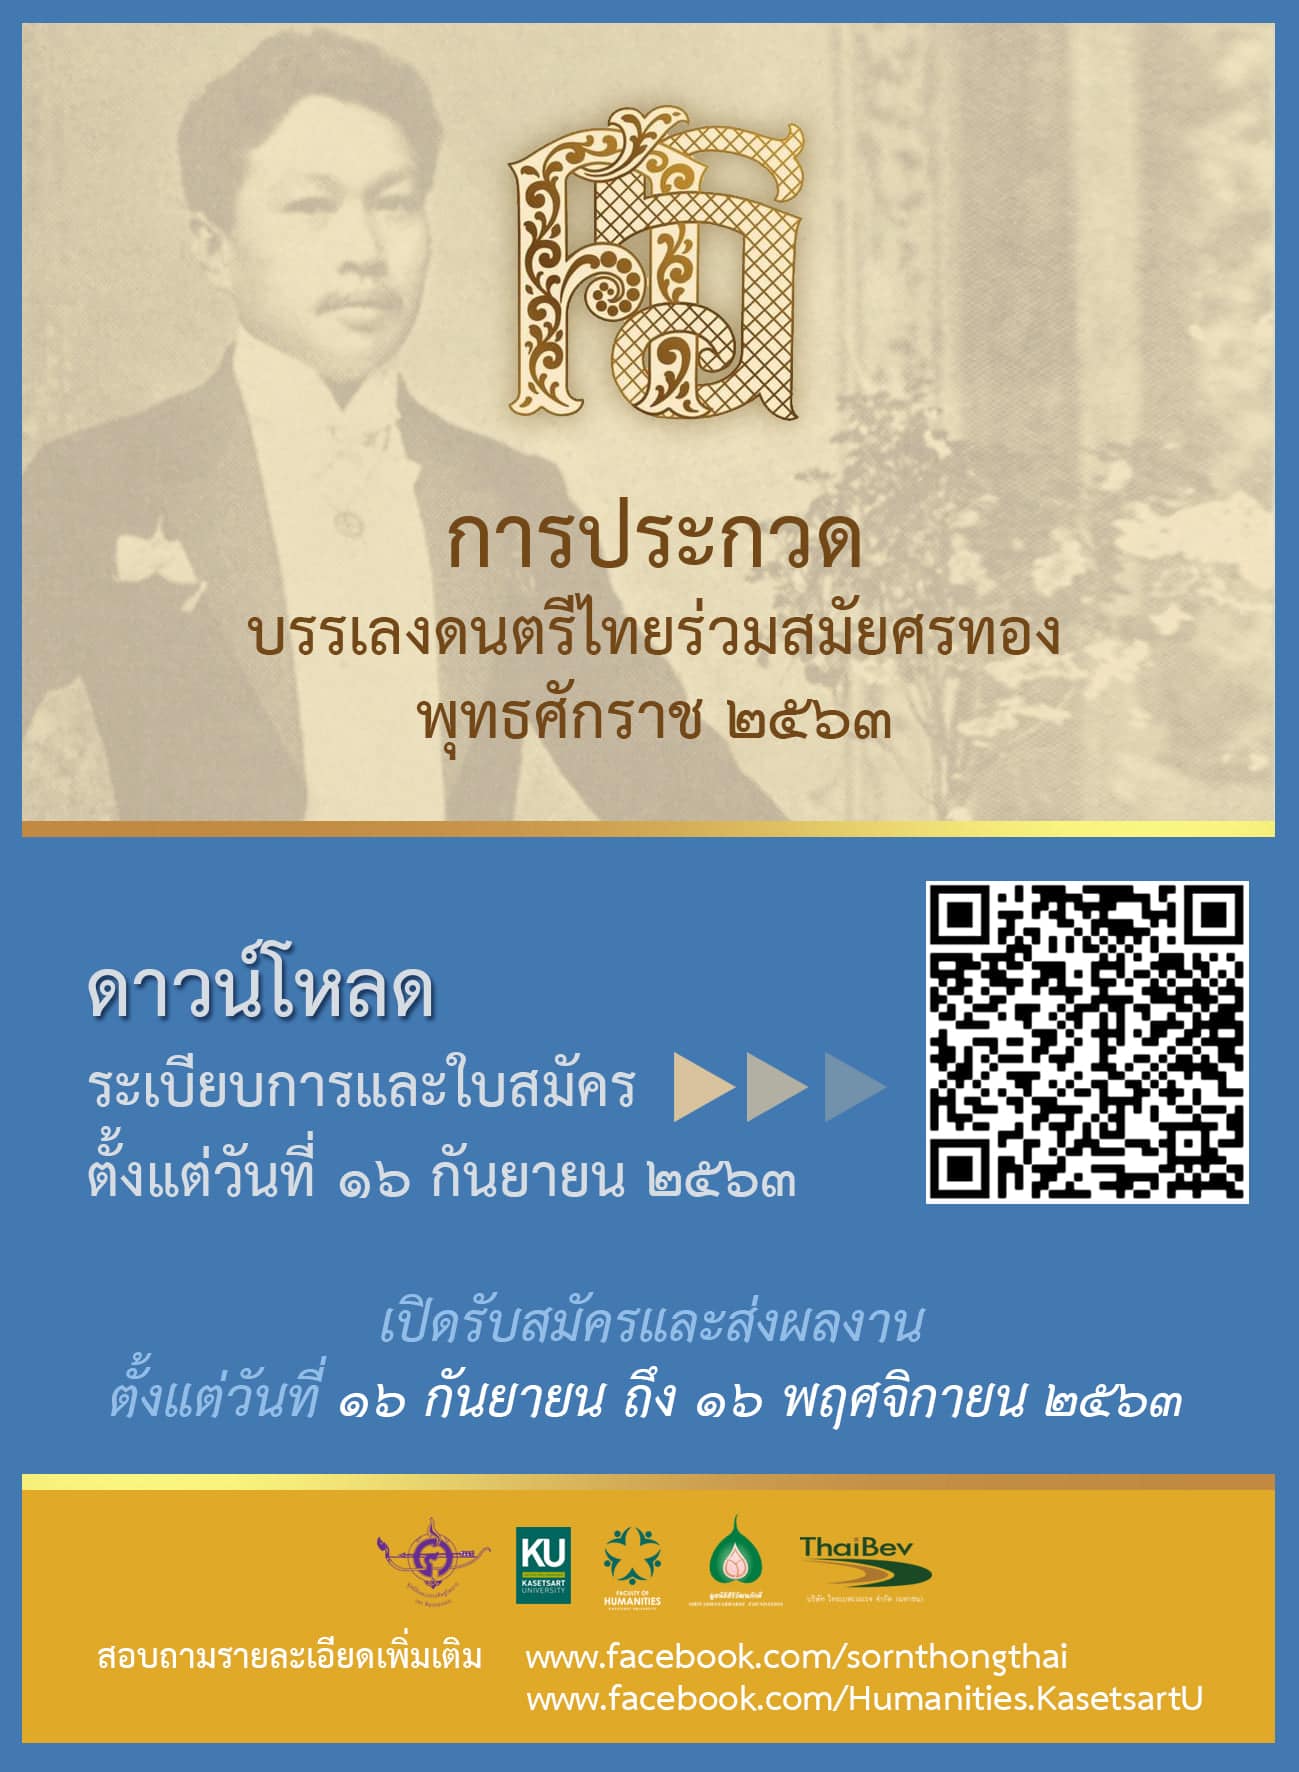 ขอเชิญชวนเข้าร่วมประกวดบรรเลงดนตรีไทยร่วมสมัยศรทอง ประจำปีพุทธศักราช 2563 ส่งผลงานได้ถึงวันที่ 16 พฤศจิกายน 2563  